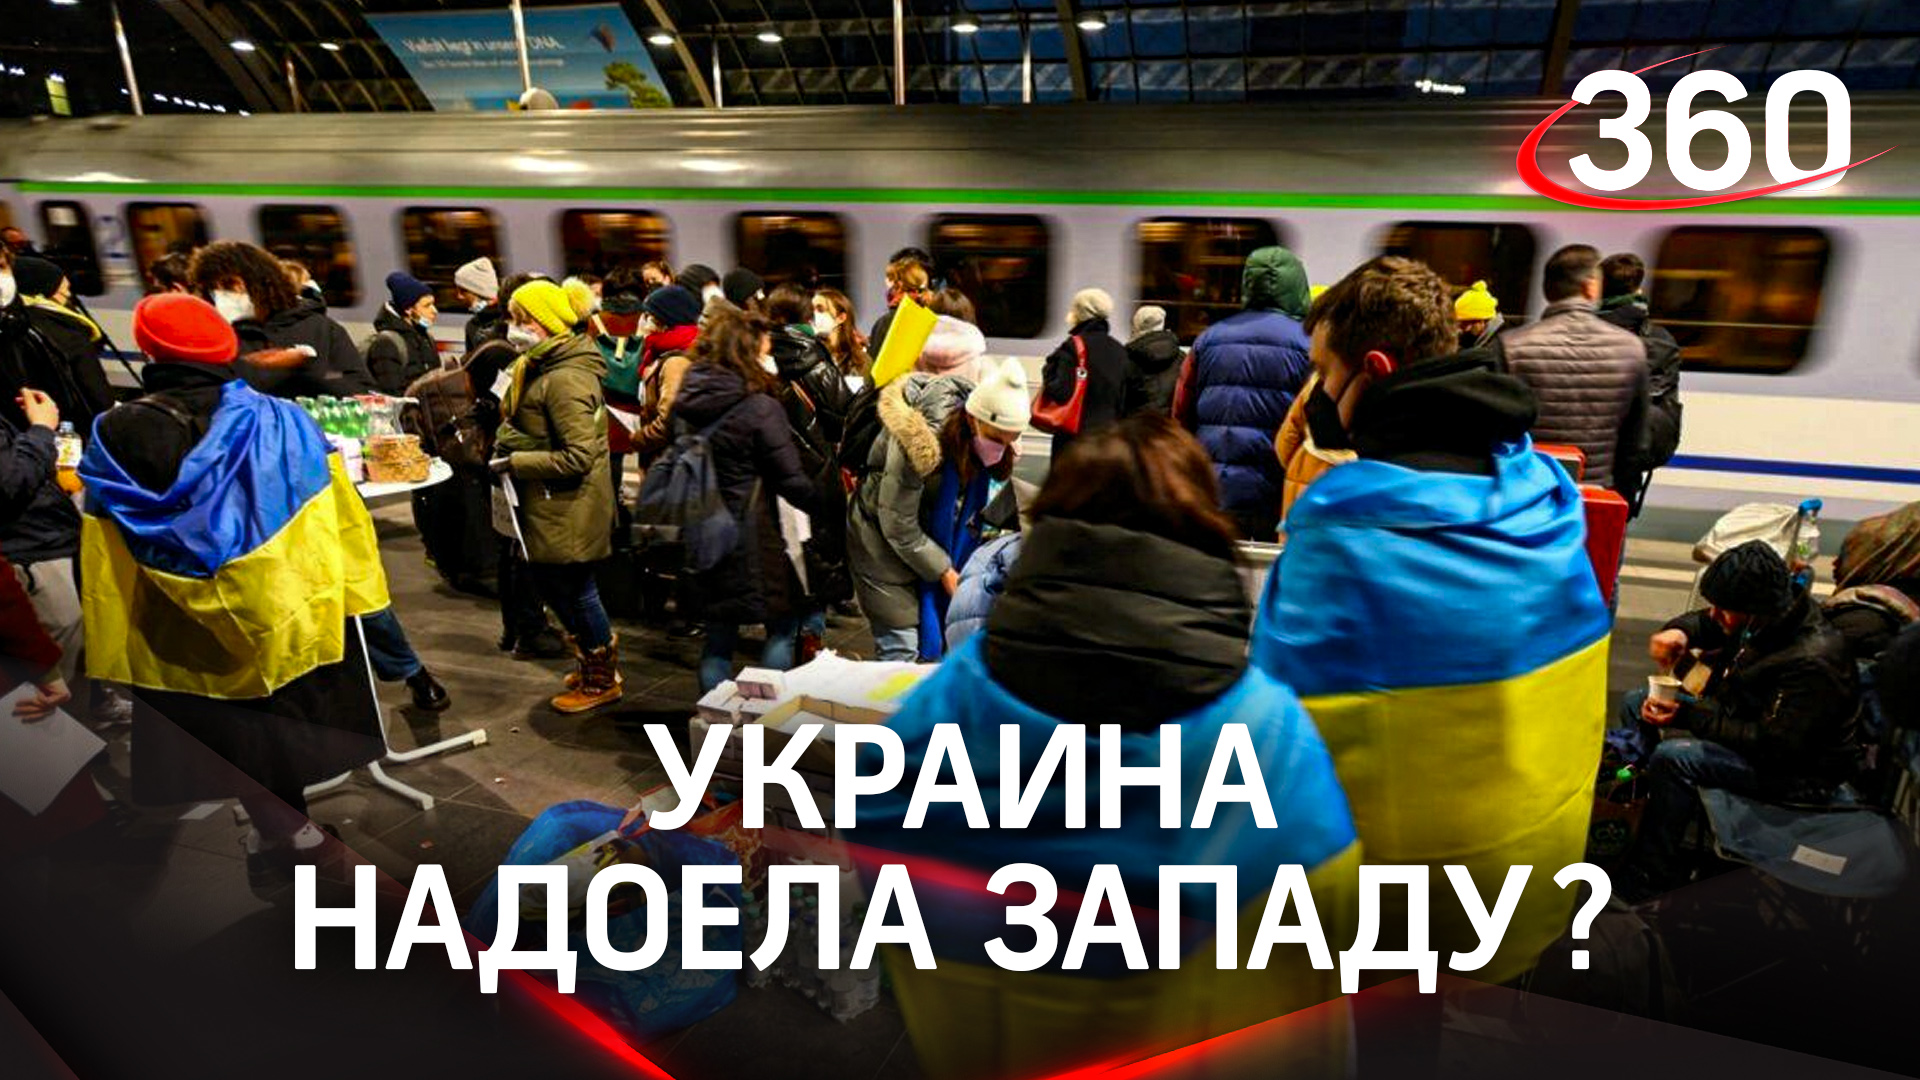 Запад устал от Украины: немцы против беженцев, США считают каждый доллар, Израиль везёт лекарства